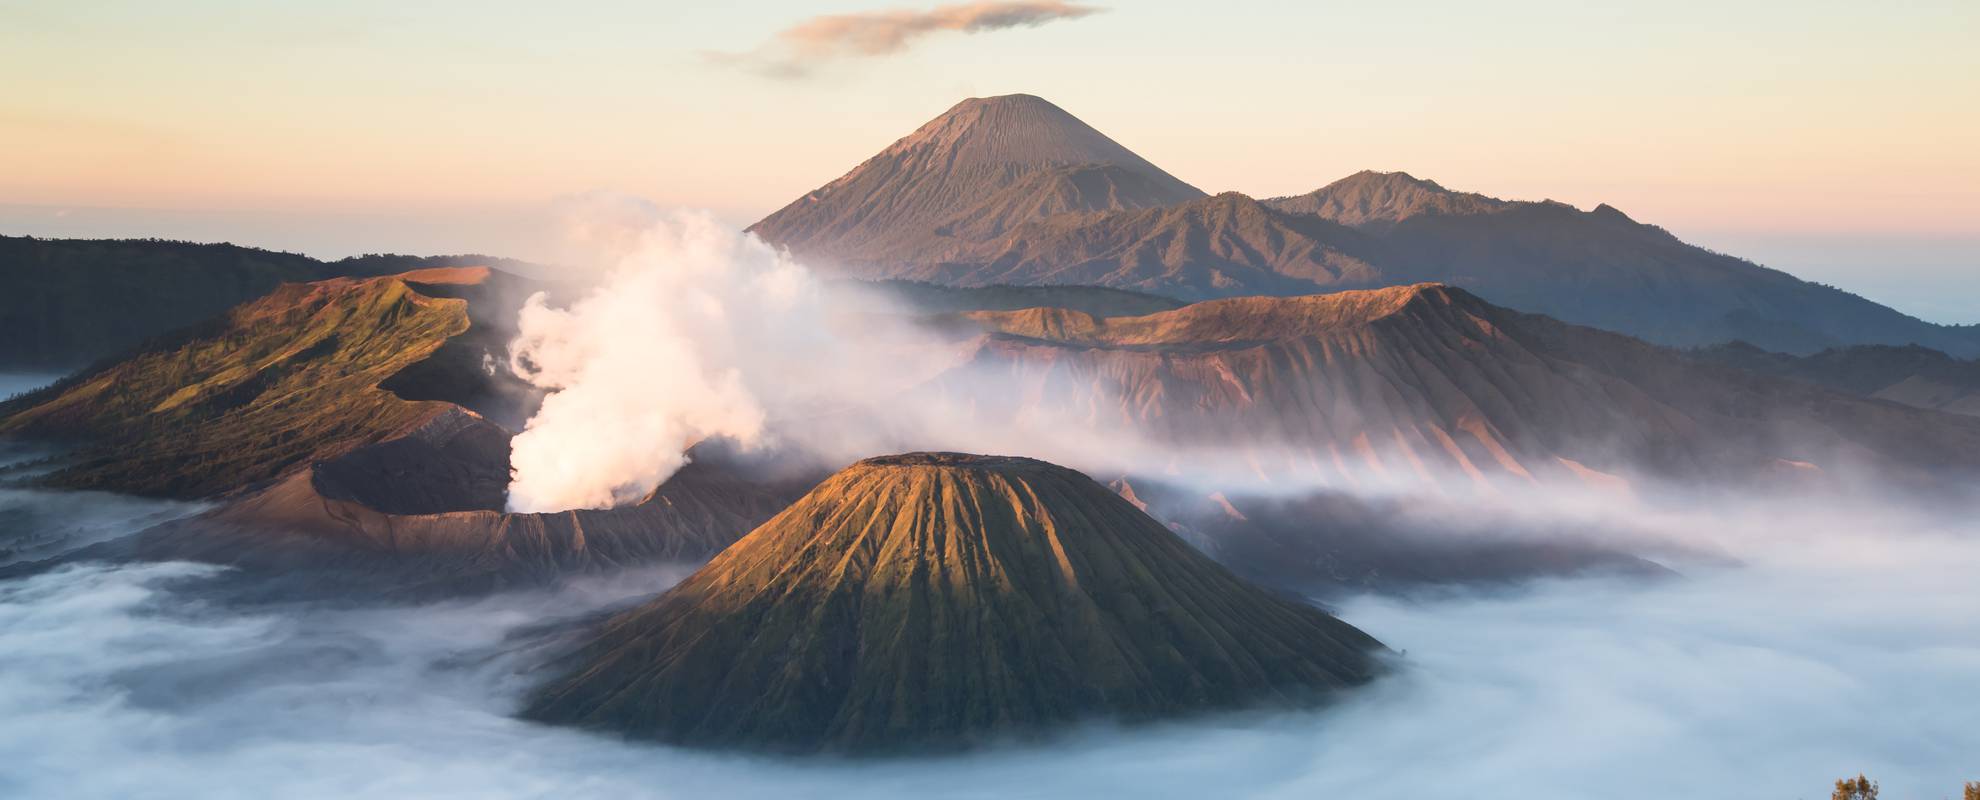 Besök och vandring vid vulkaner är en av resans höjdpunkter